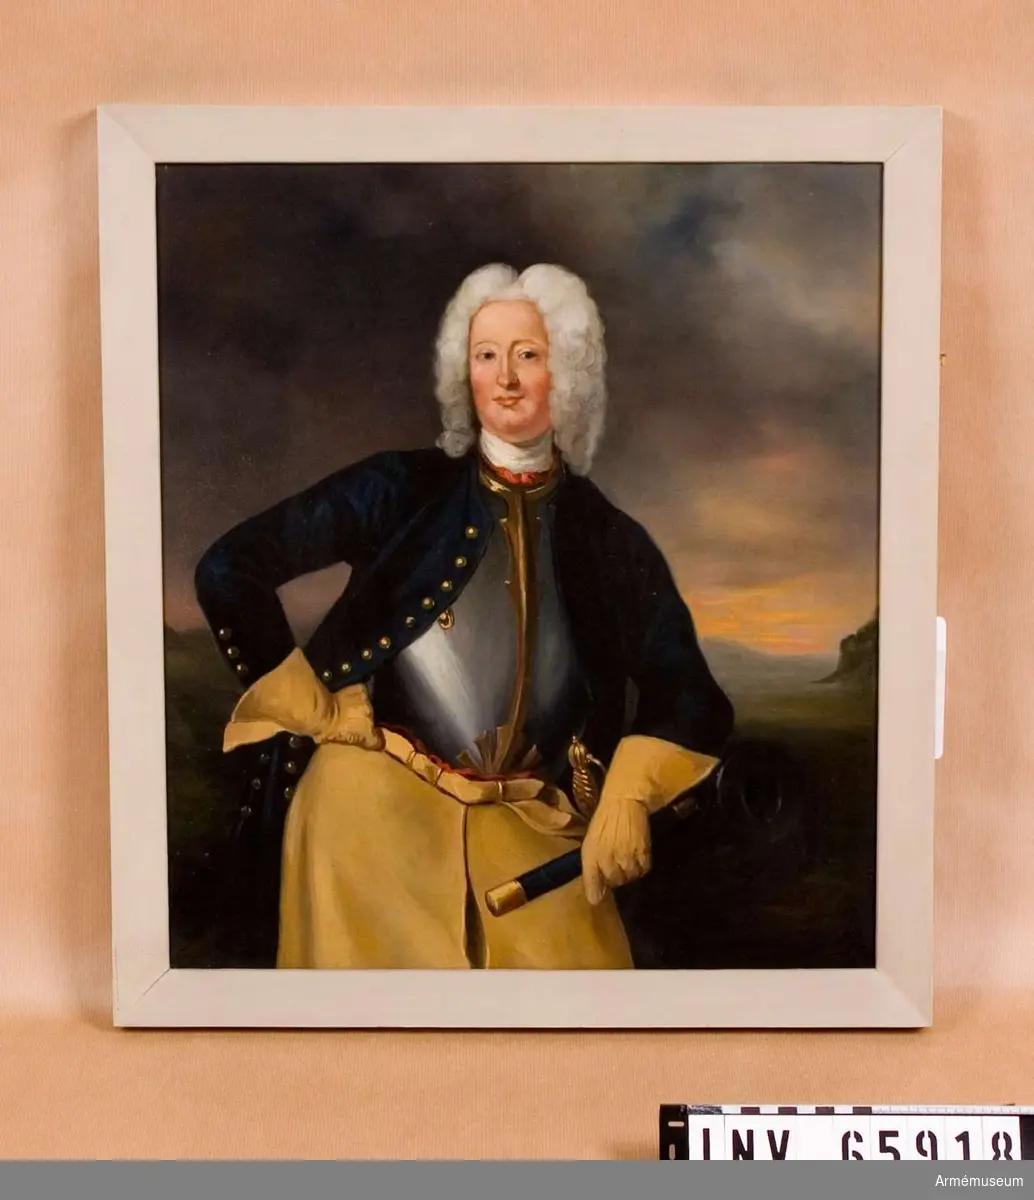 Grupp M I. 
Oljemålning i form av porträtt föreställande Carl Cronstedt f. 1672 d. 1750, friherre, generallöjtnant, president i Krigskollegium, det svenska artilleriets skapare. 
Porträttet är en kopia utfört av Henrik Scheffel (1690-1781).  Cronstedt är porträtterad framifrån lutad mot en kanon. Han bär vit och röd halsbindel, harnesk karolinsk dräkt och långa kraghandskar. Huvudet är bart med peruk. Infattning: förgylld träram, utomkring slät, innanför pärlkant.